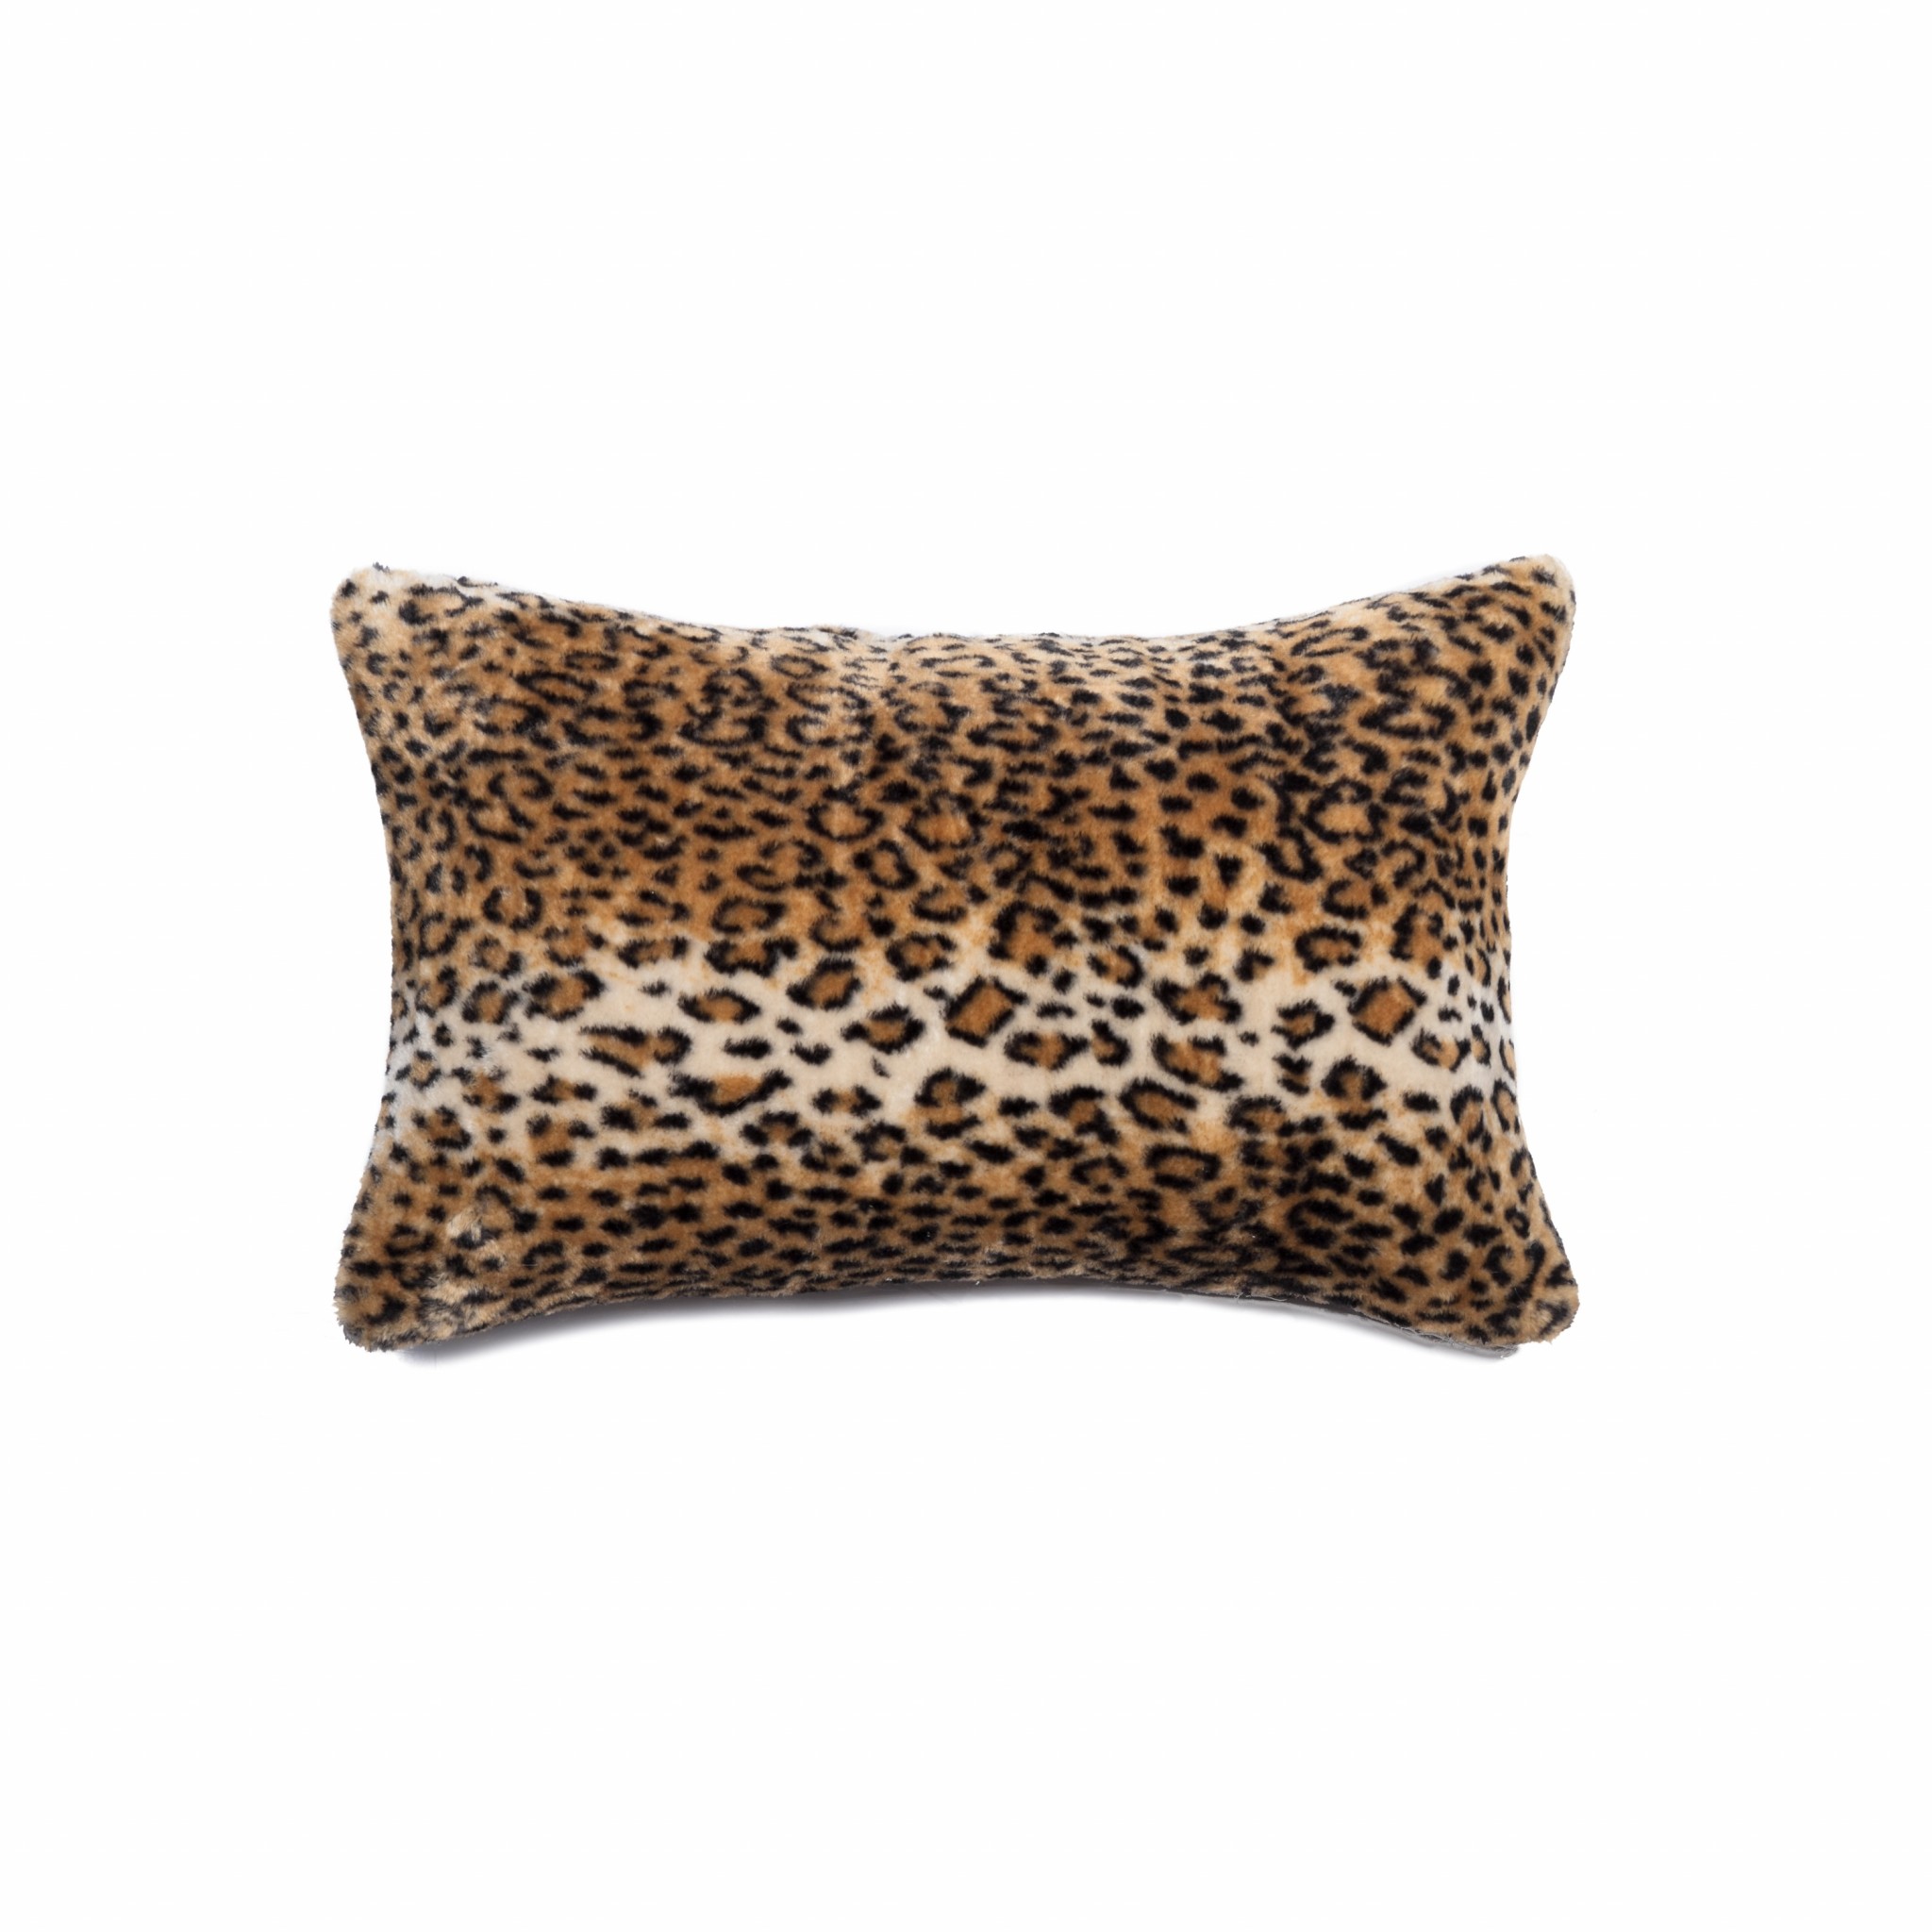 12" x 20" x 5" El Paso Leopard Faux Fur - Pillow